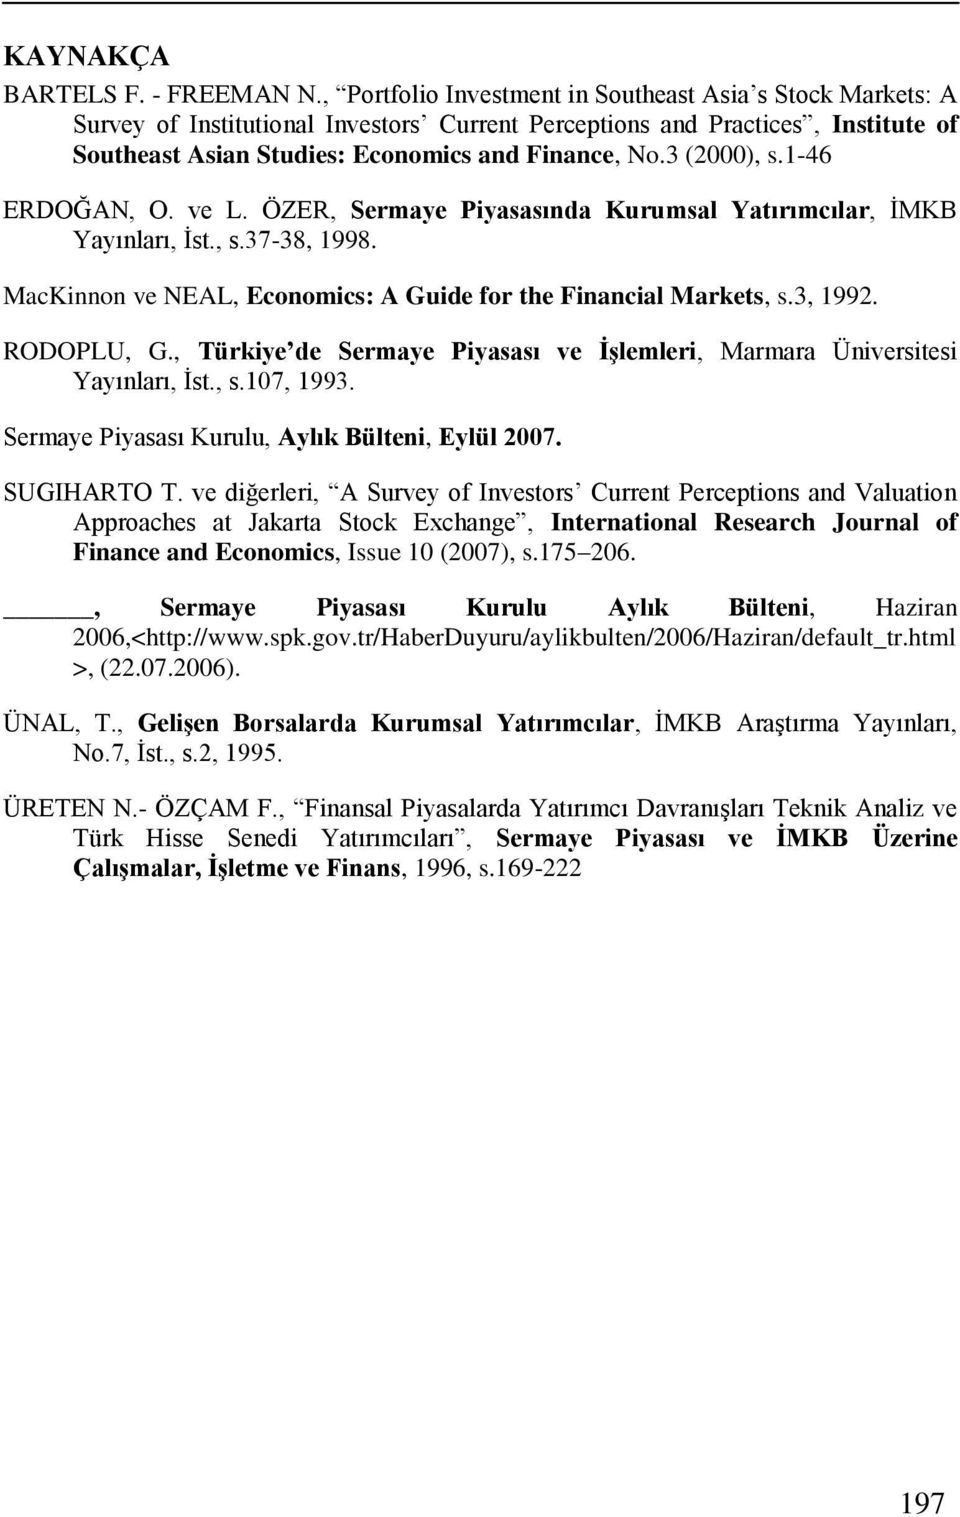 3 (2000), s.1-46 ERDOĞAN, O. ve L. ÖZER, Sermaye Piyasasında Kurumsal Yatırımcılar, ĠMKB Yayınları, Ġst., s.37-38, 1998. MacKinnon ve NEAL, Economics: A Guide for the Financial Markets, s.3, 1992.